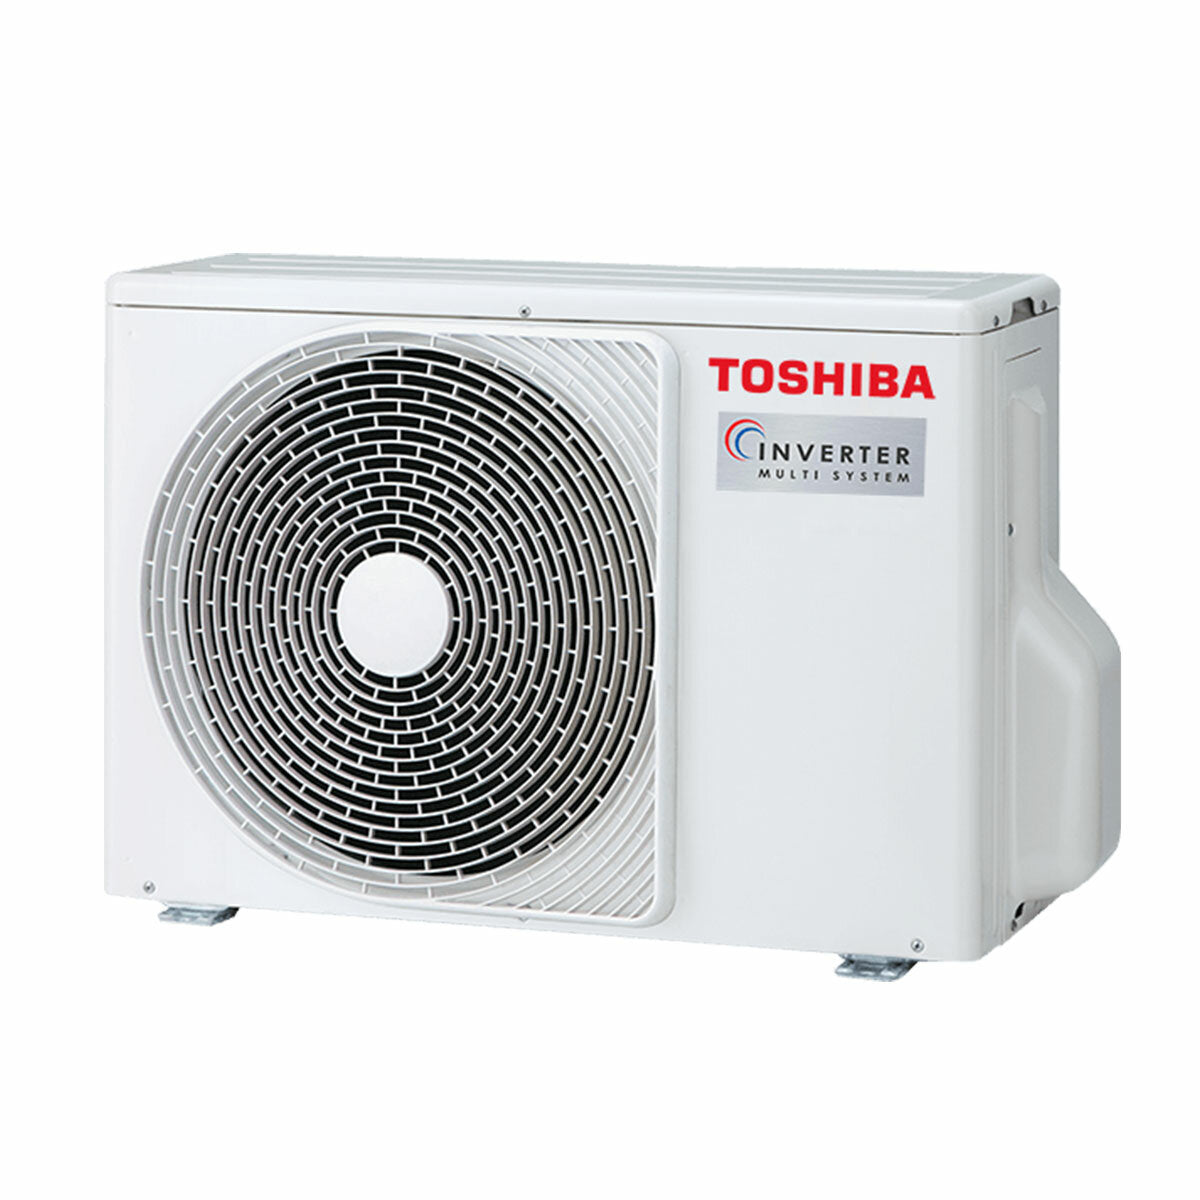 Climatiseur trial split Toshiba SHORAI Edge White 7000+7000+12000 BTU inverseur A+++ unité extérieure wifi 5,2 kW 